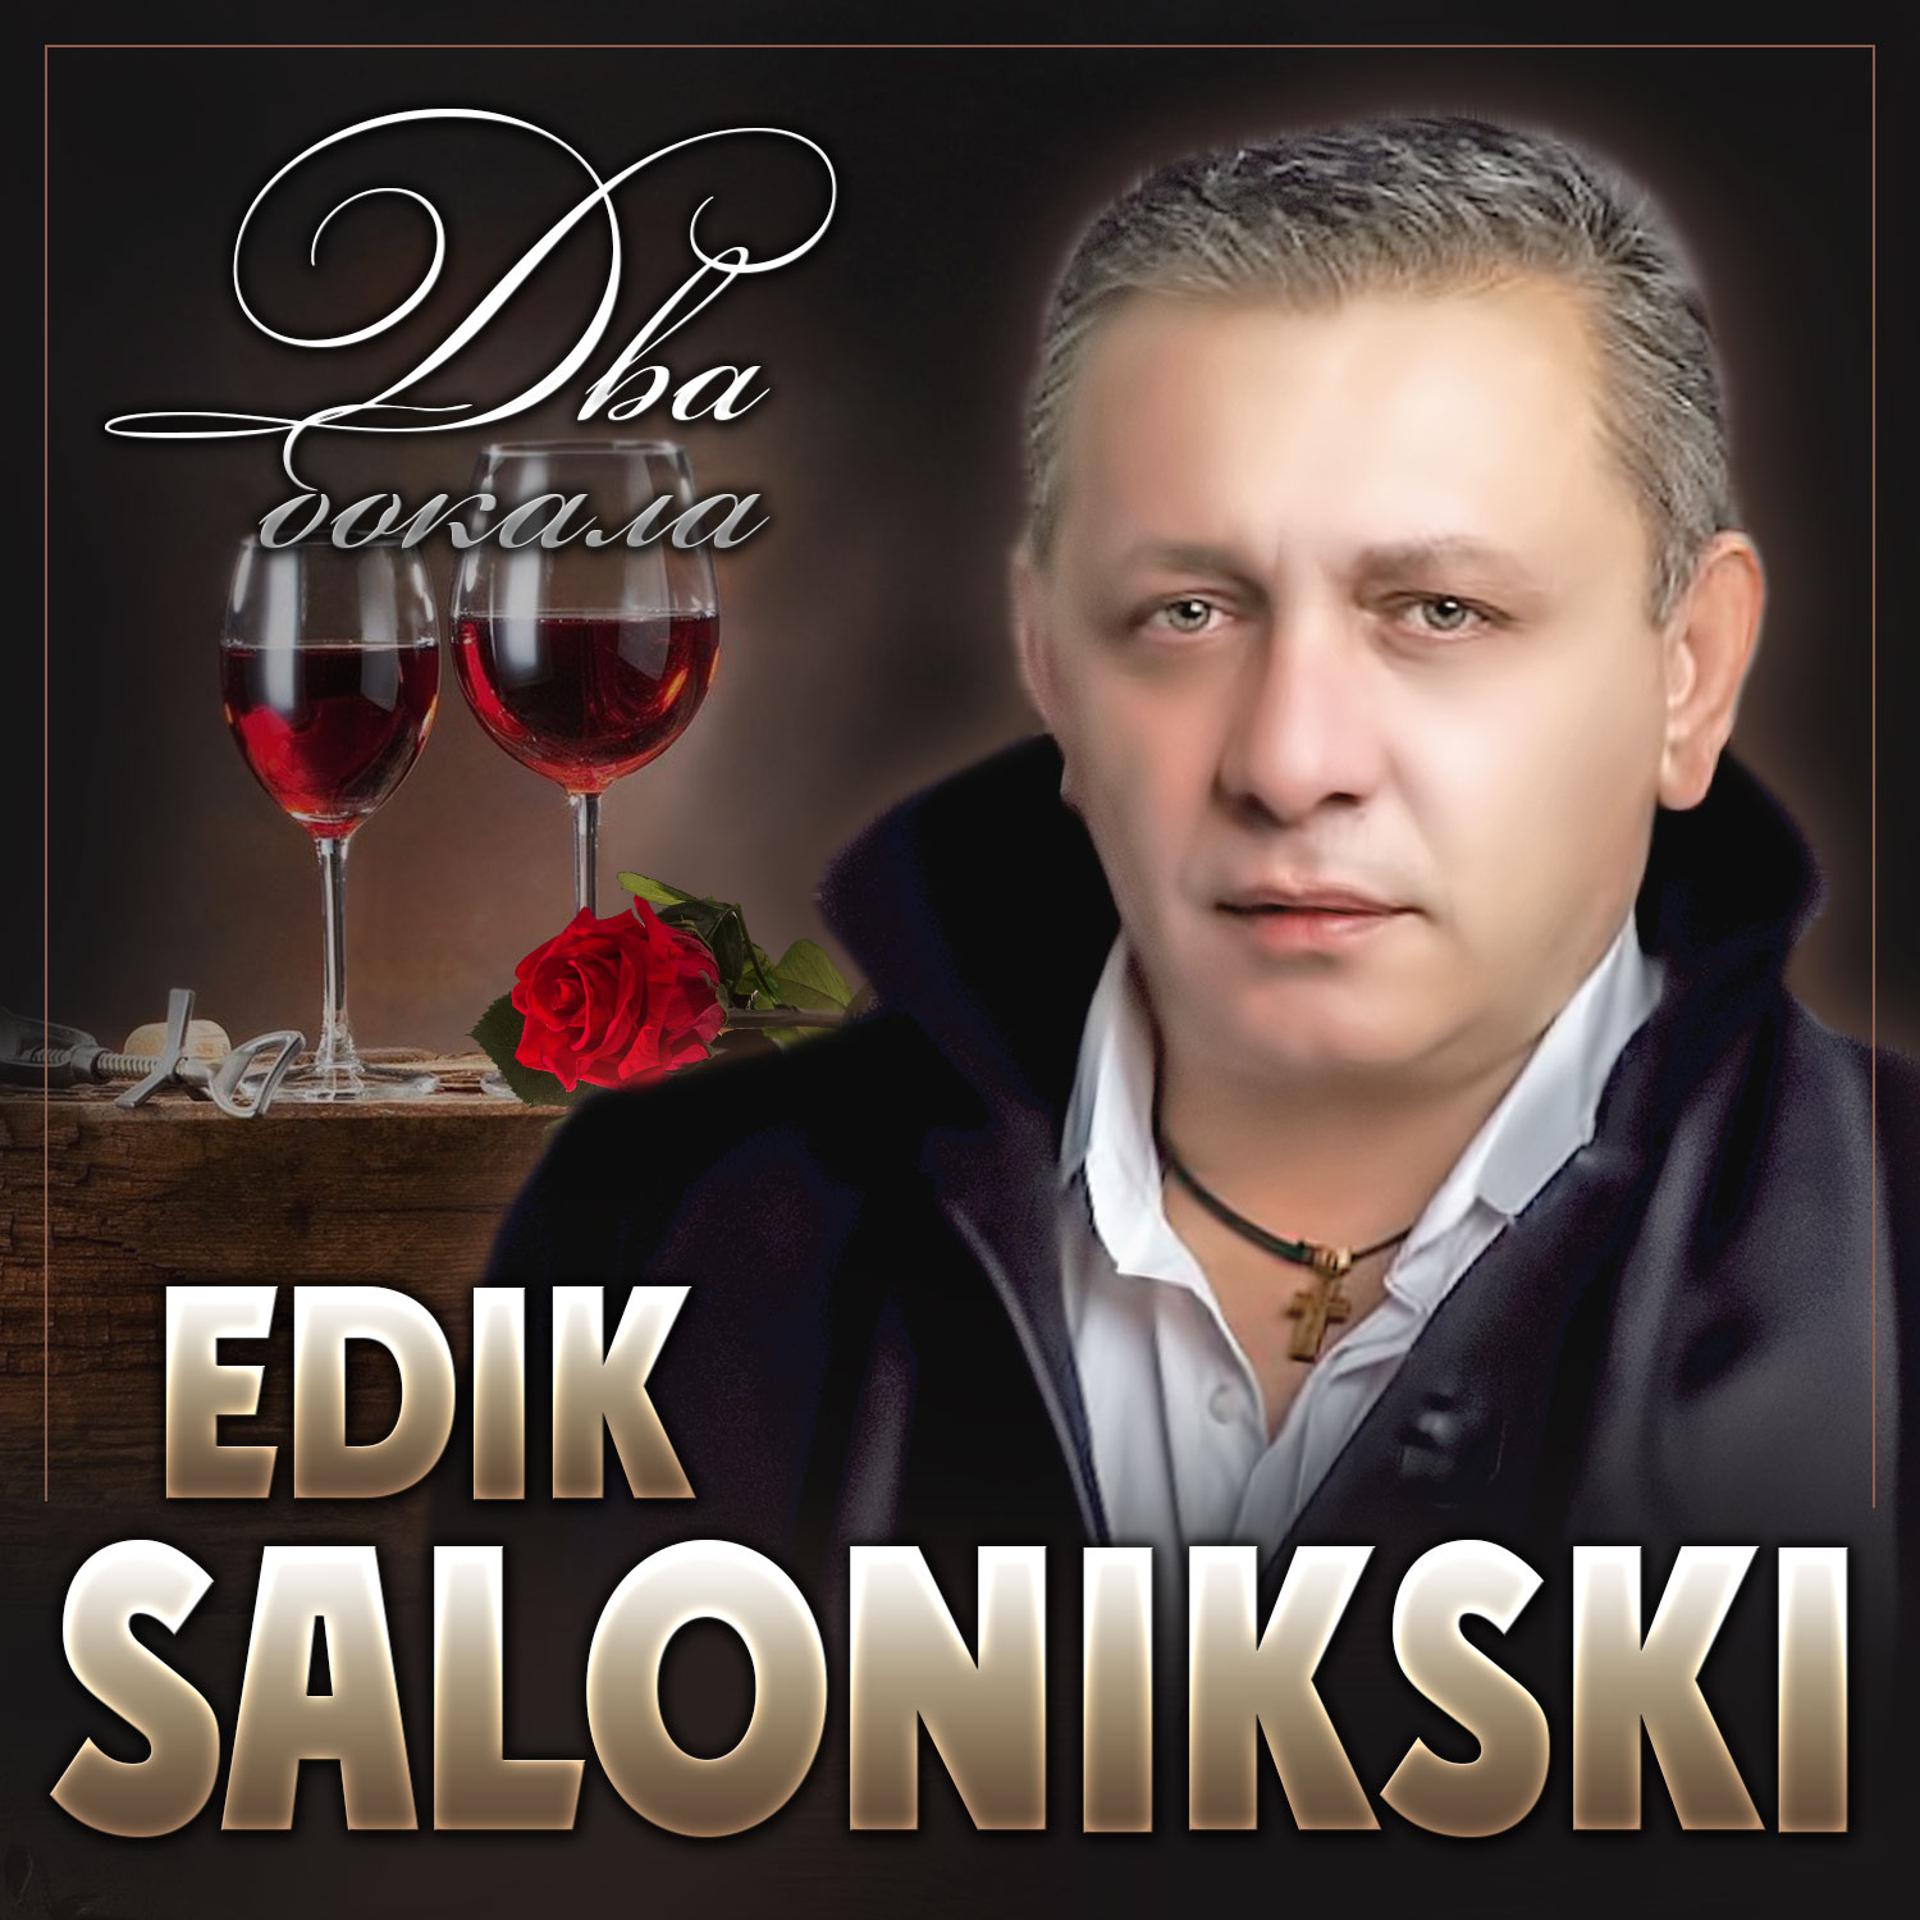 Edik Salonikski - фото